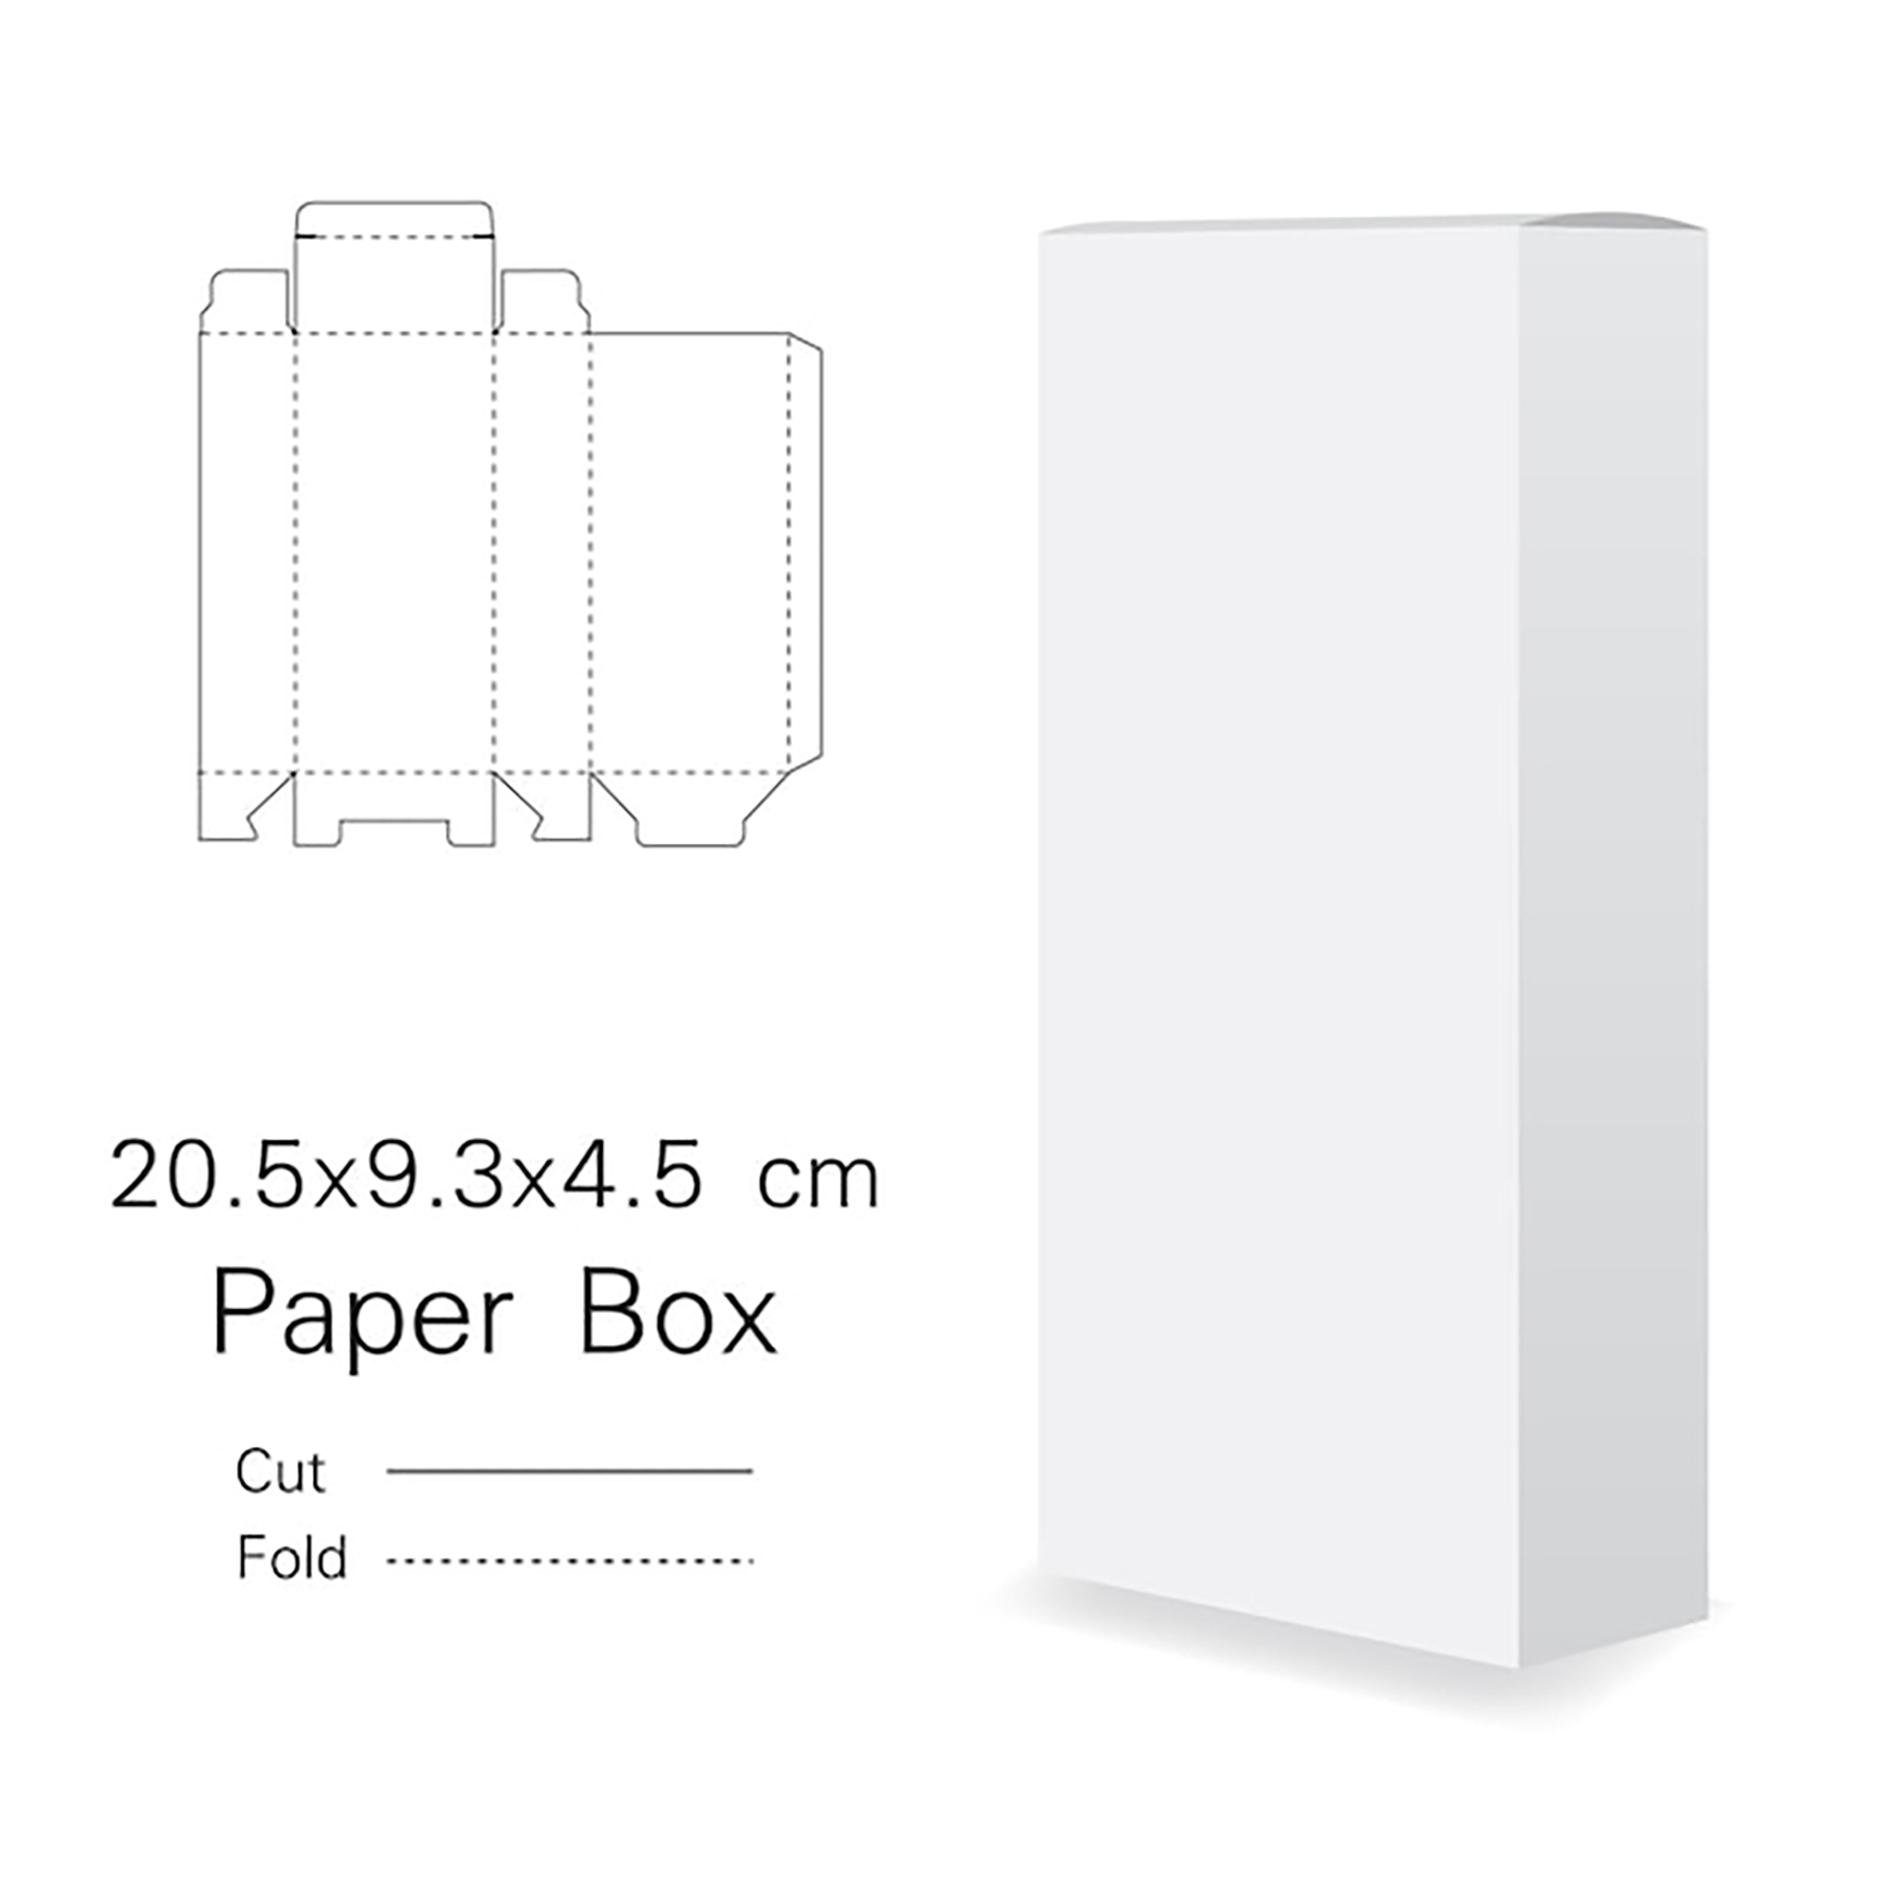 موکاپ جعبه بسته بندی عمودی به همراه سایز و اندازه